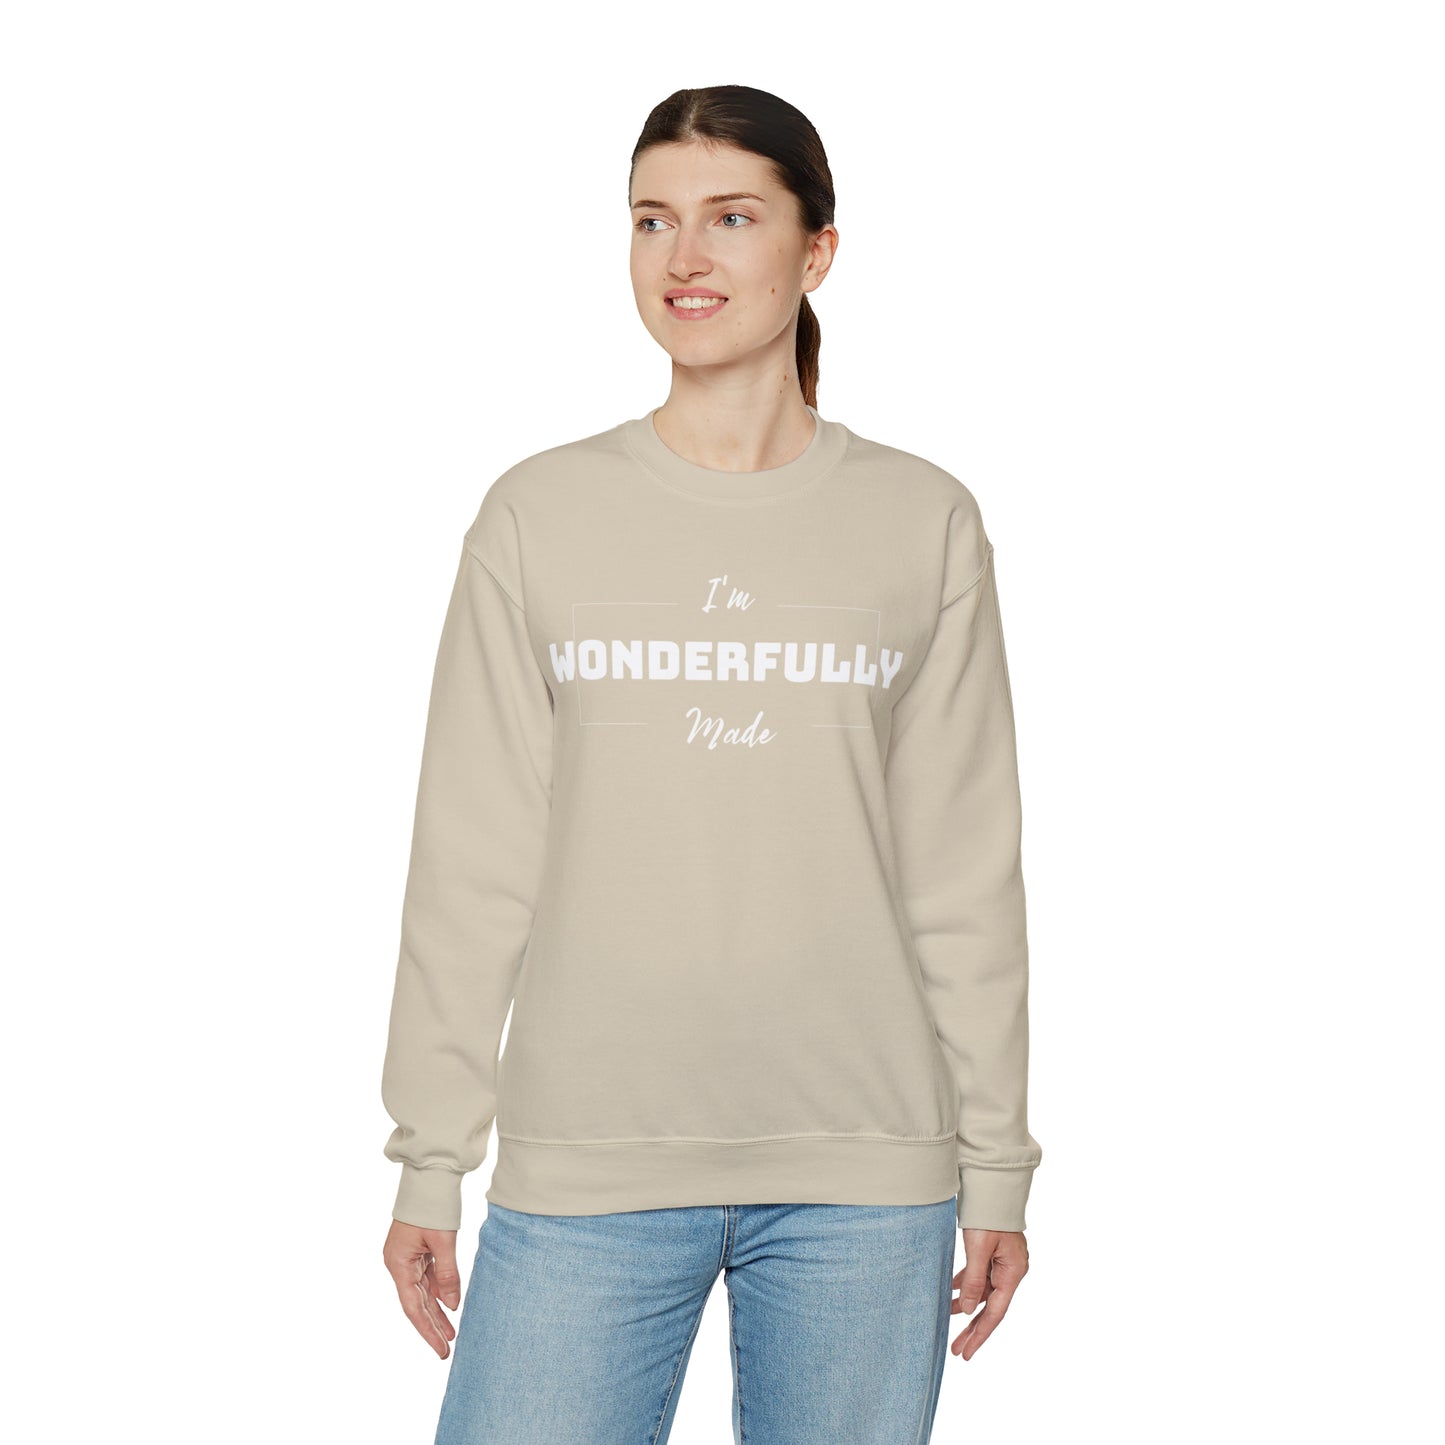 I'M WONDERFULLY MADE Unisex Heavy Blend™ Crewneck Sweatshirt